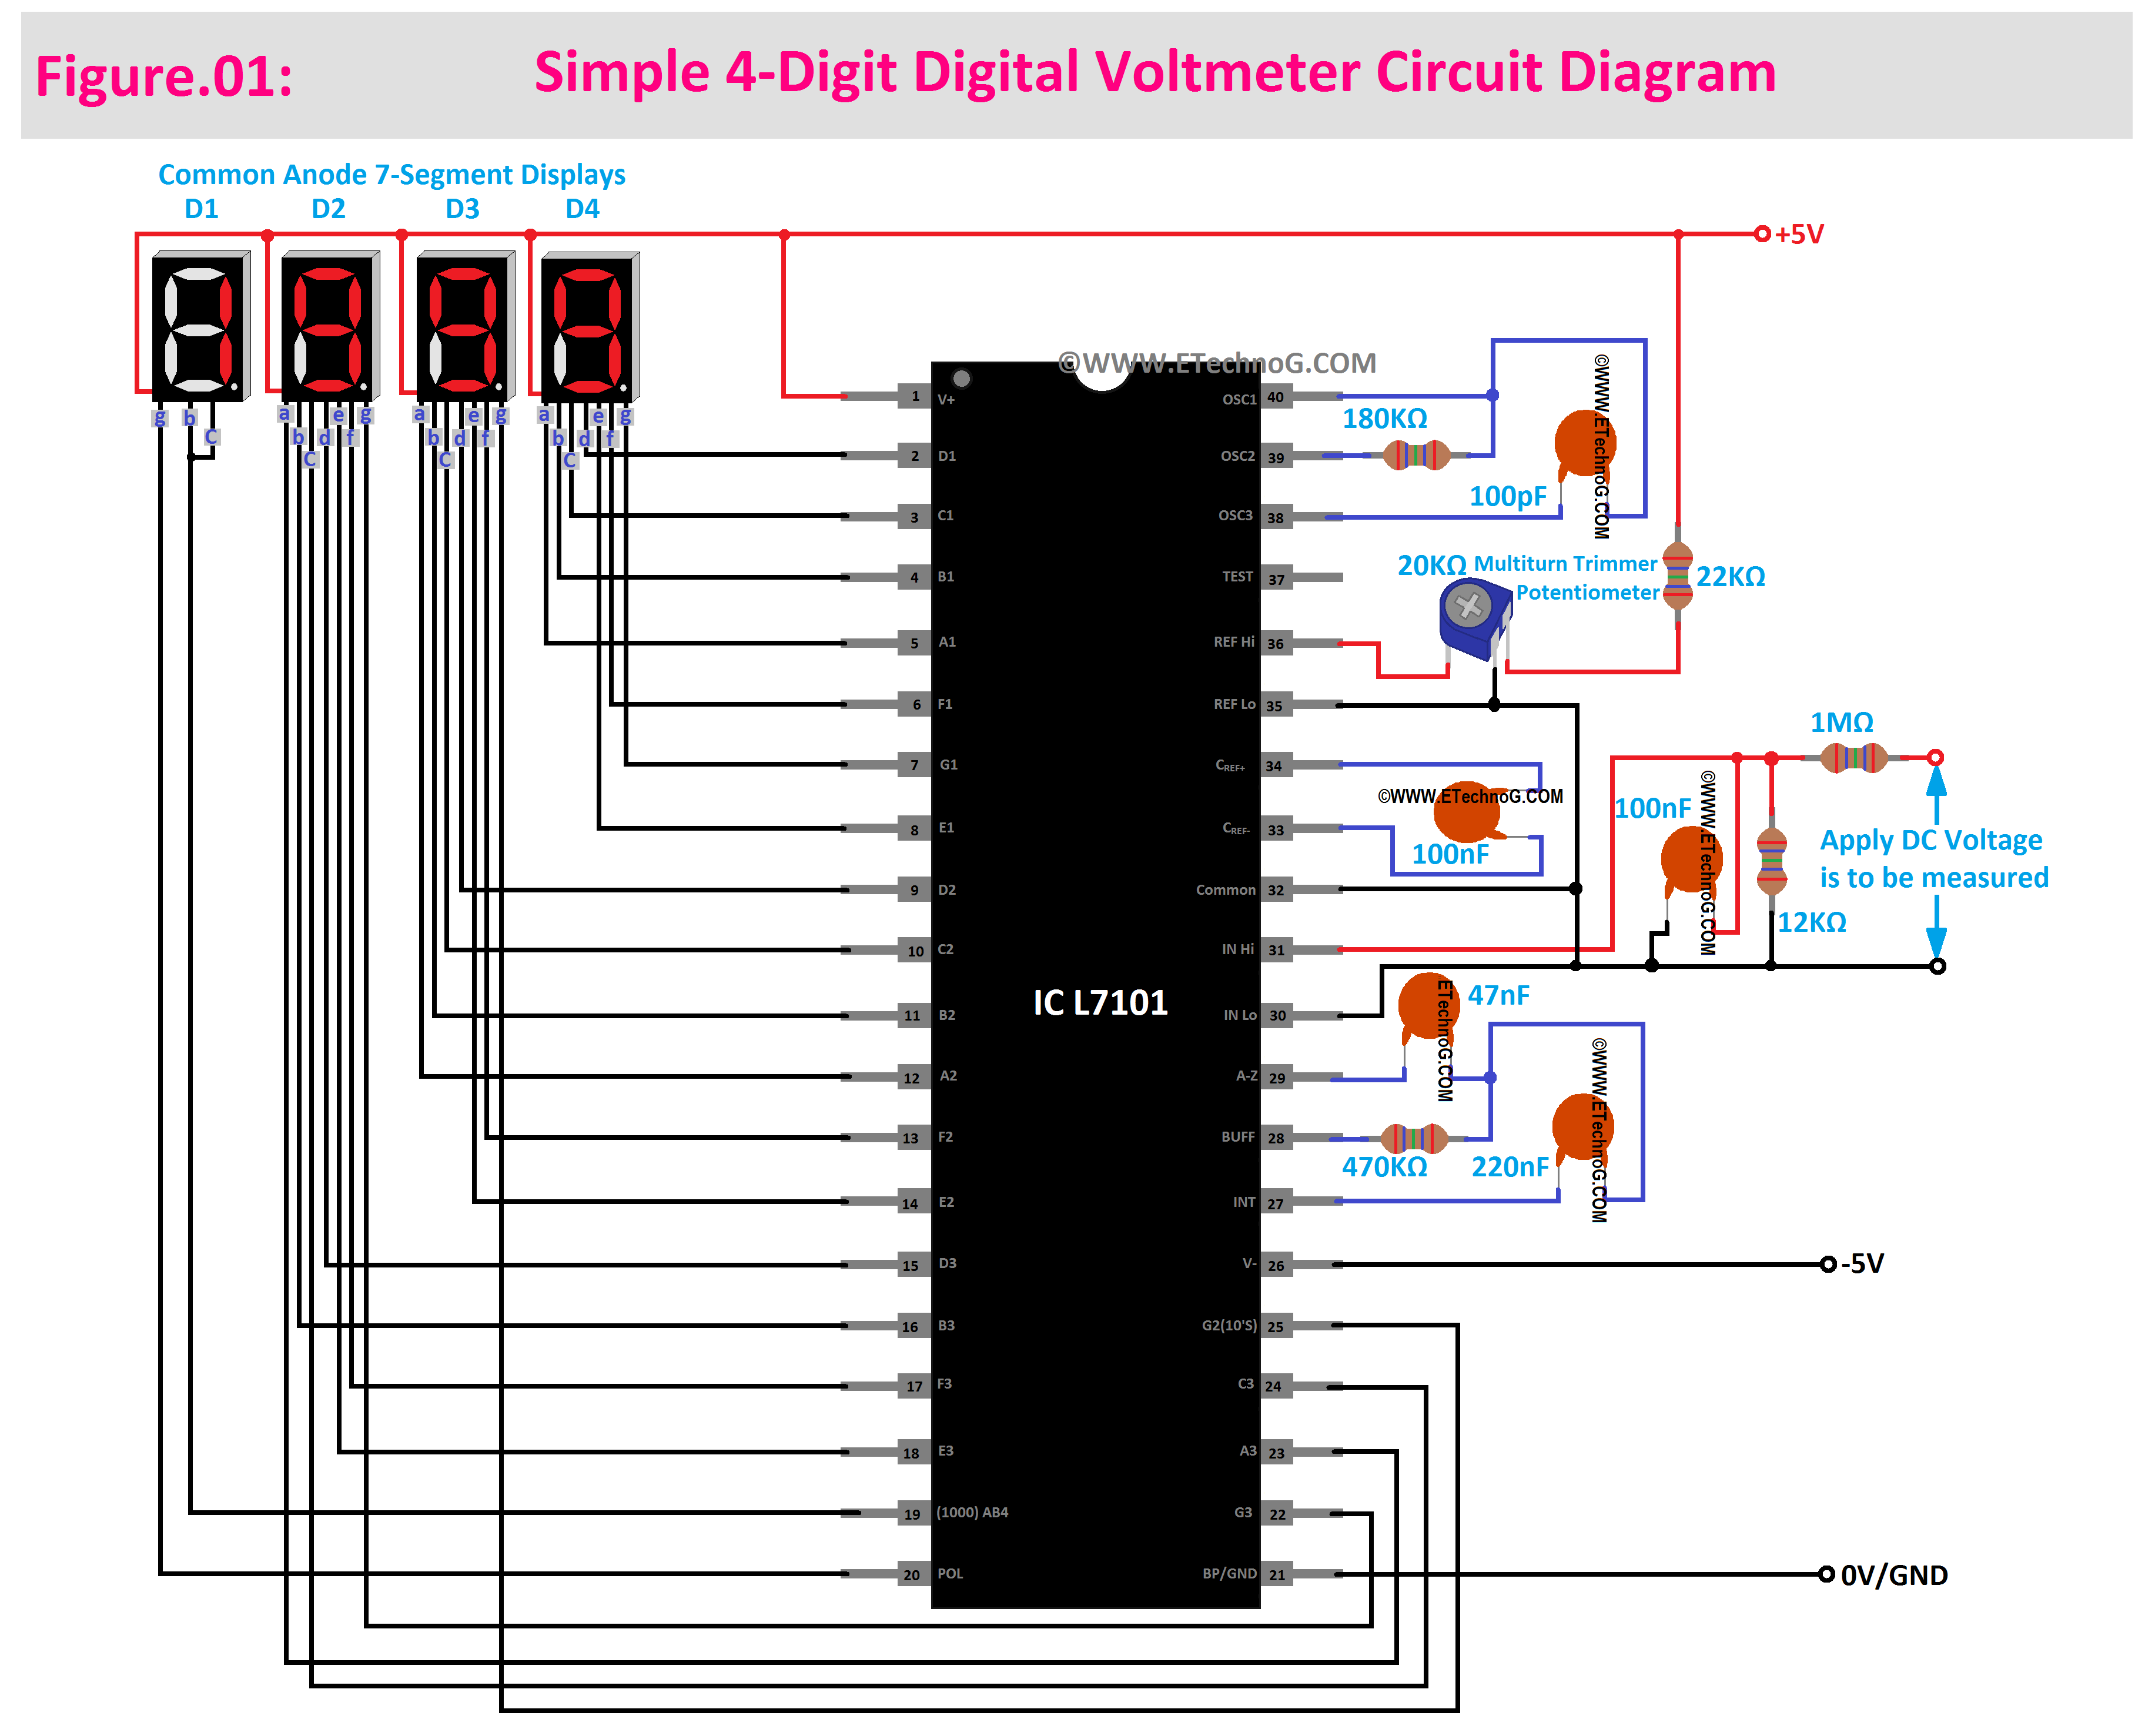 Simple Digital Voltmeter Circuit Diagram, Digital Voltmeter Circuit using ICL7107